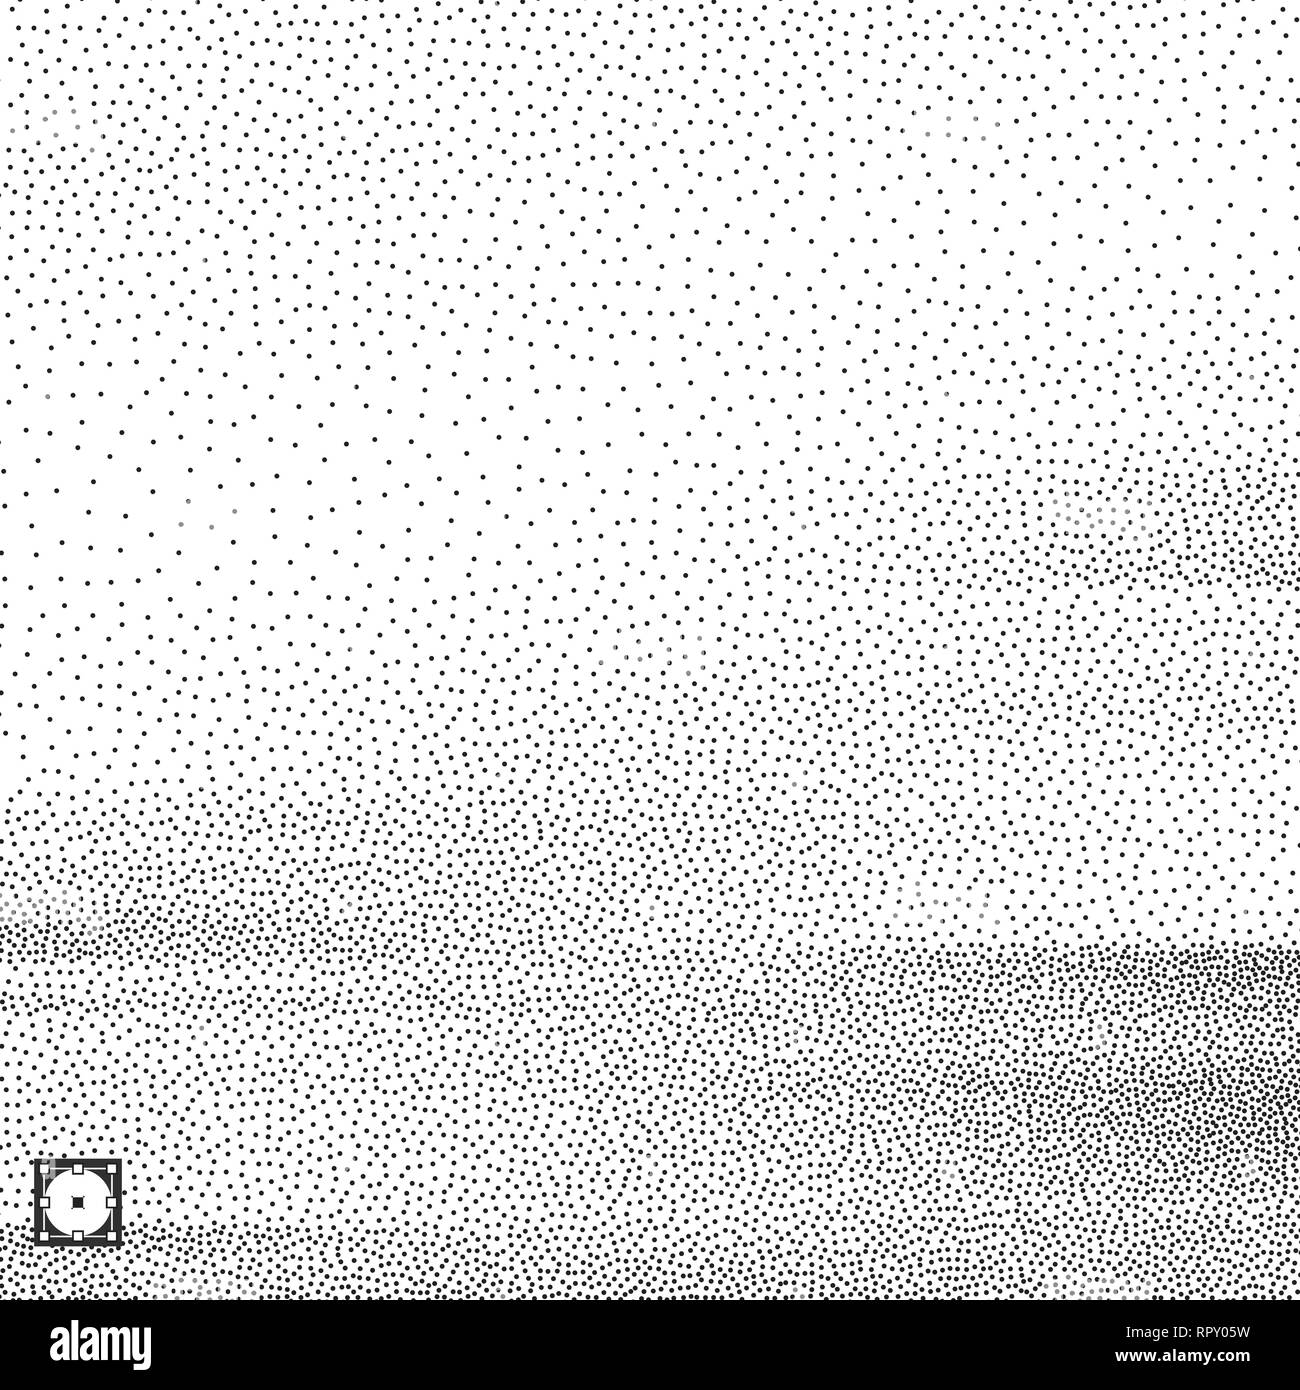 Wellenförmige Hintergrund. Schwarze und weiße körnig dotwork Design. Pointillismus Muster. Gepunktete Vector Illustration. Stock Vektor